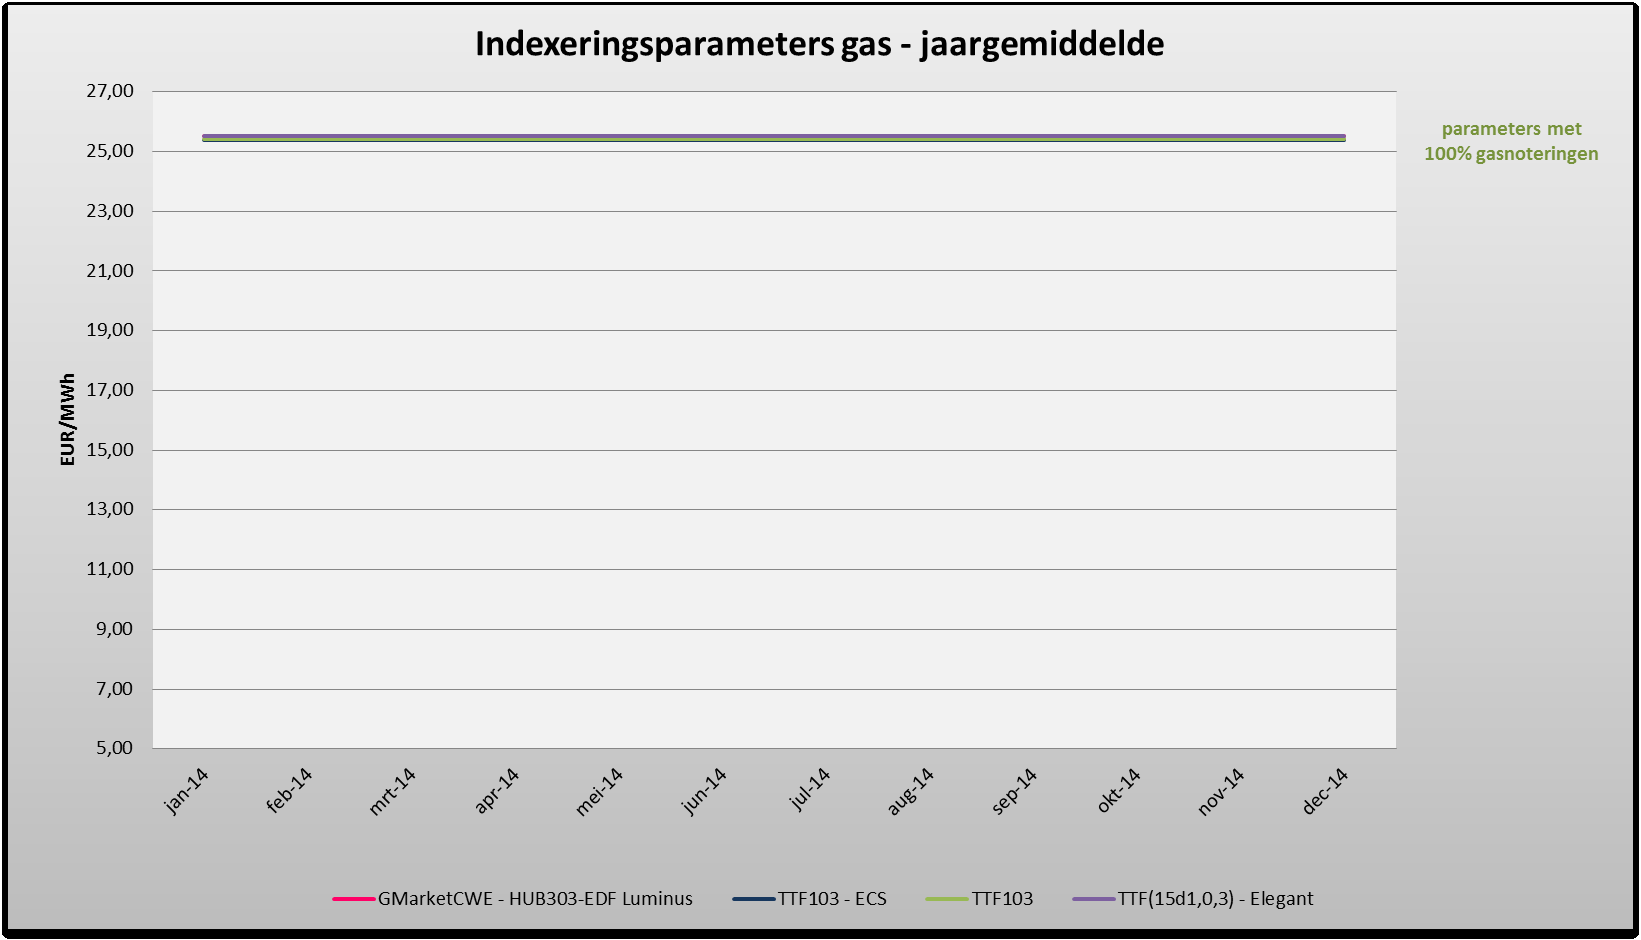 24. Figuur 9 geeft een overzicht van de jaargemiddelde waarden van de verschillende indexeringsparameters gas.